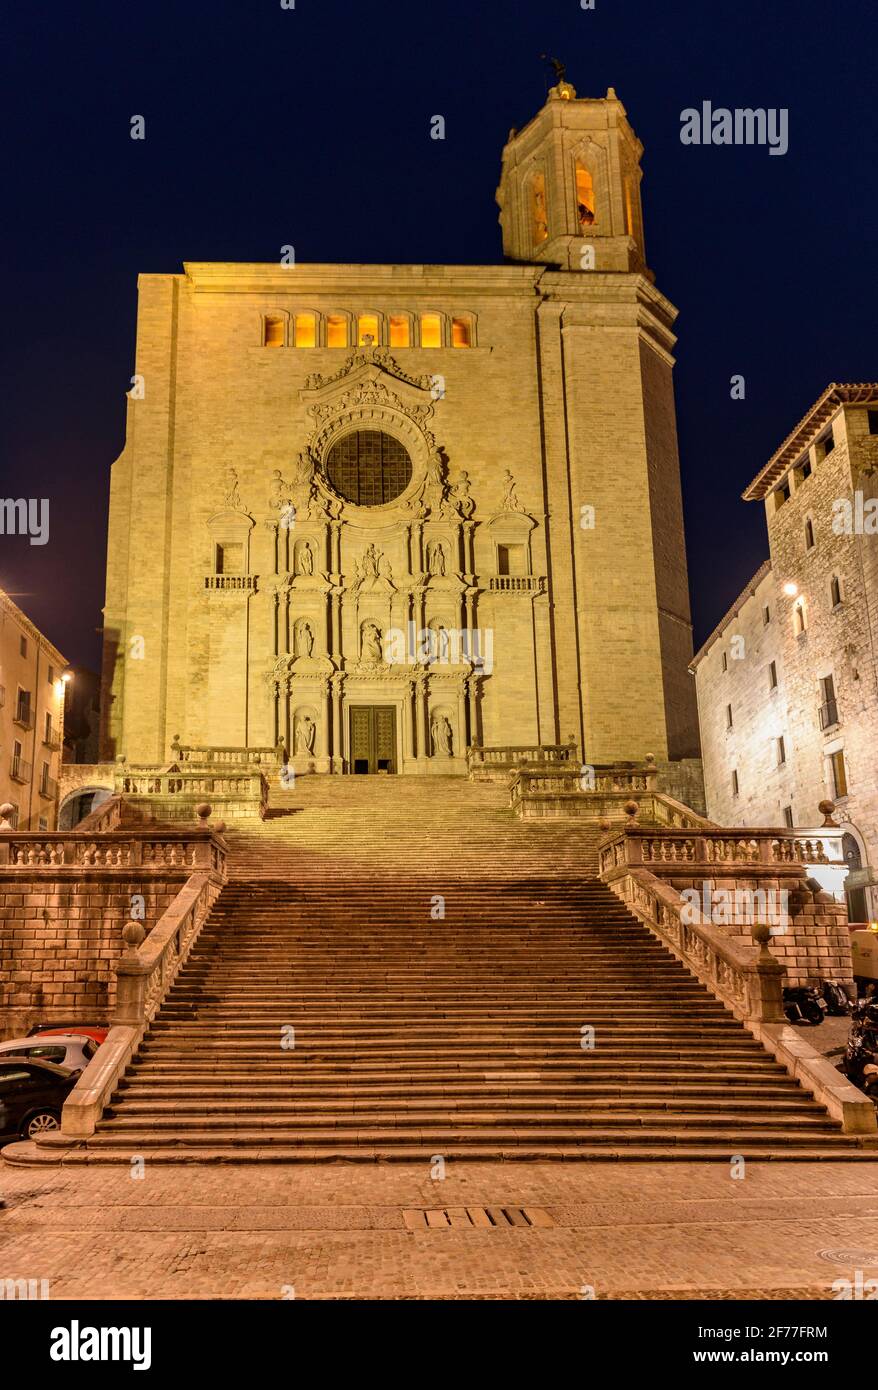 Girona Cathedral, at night (Girona, Catalonia, Spain) ESP: La Catedral de Gerona, de noche (Girona, Cataluña, España) FR: La Cathédrale de Gérone Stock Photo